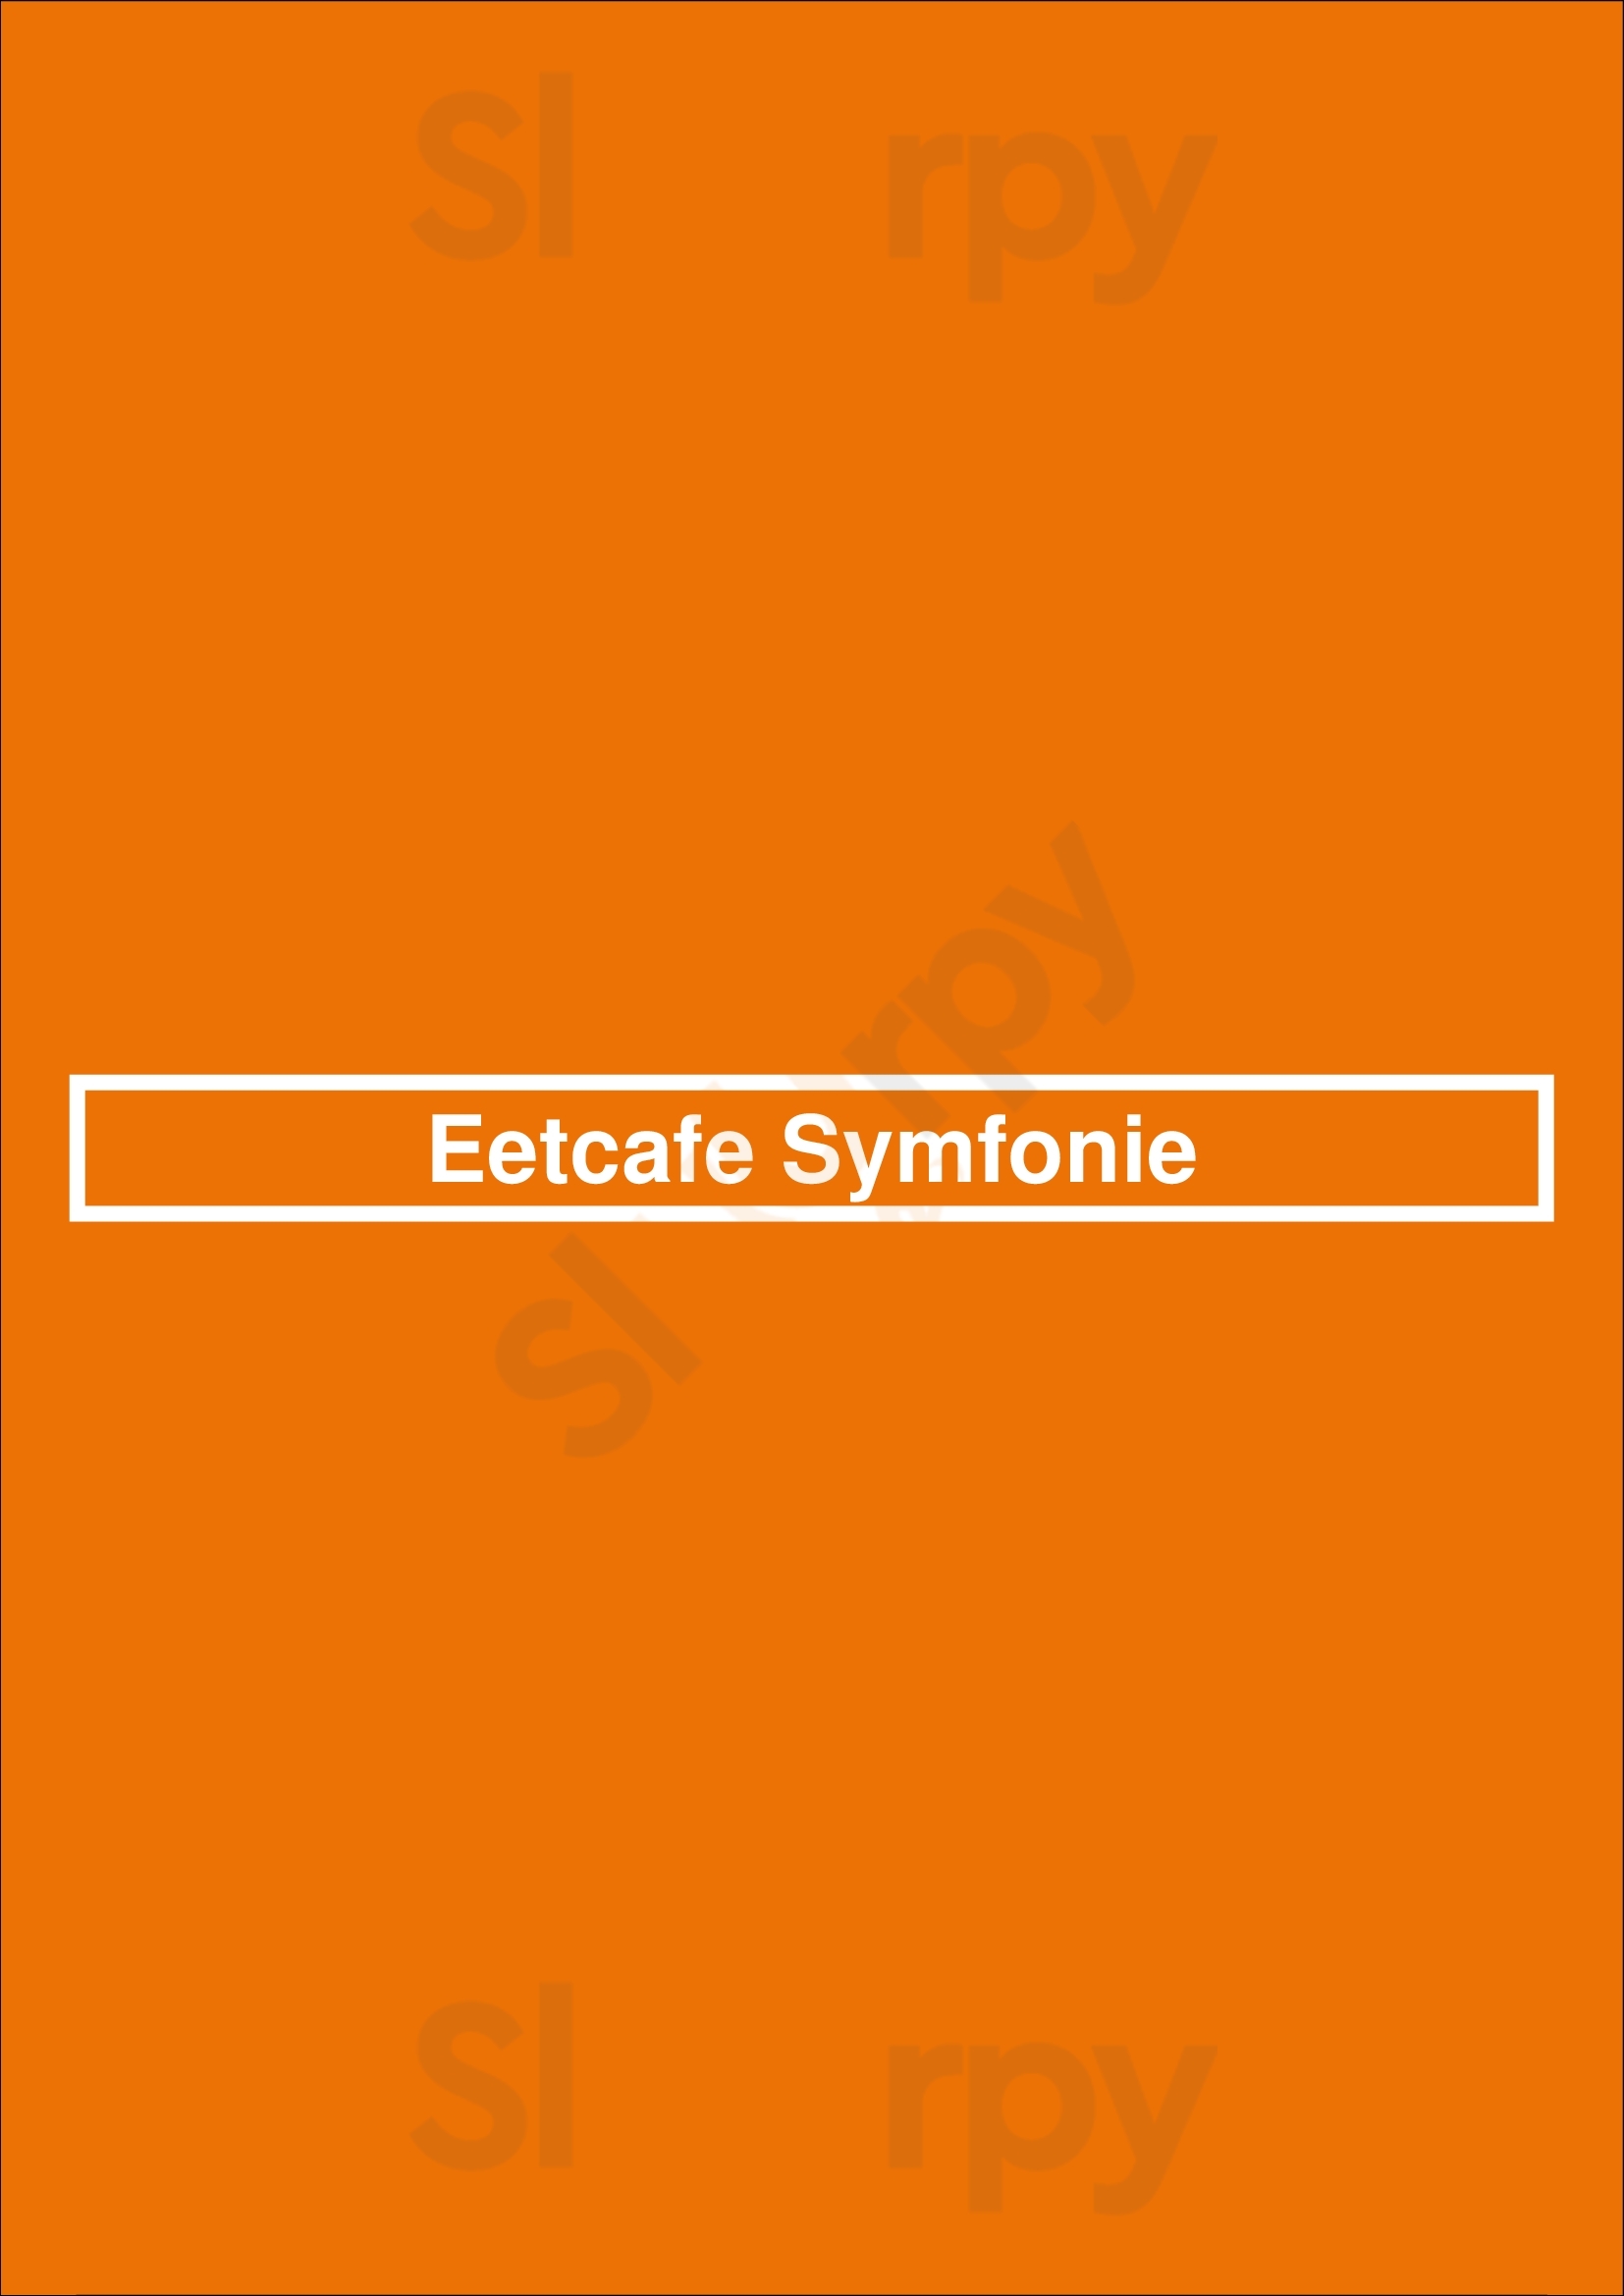 Eetcafe Symfonie Maarssen Menu - 1